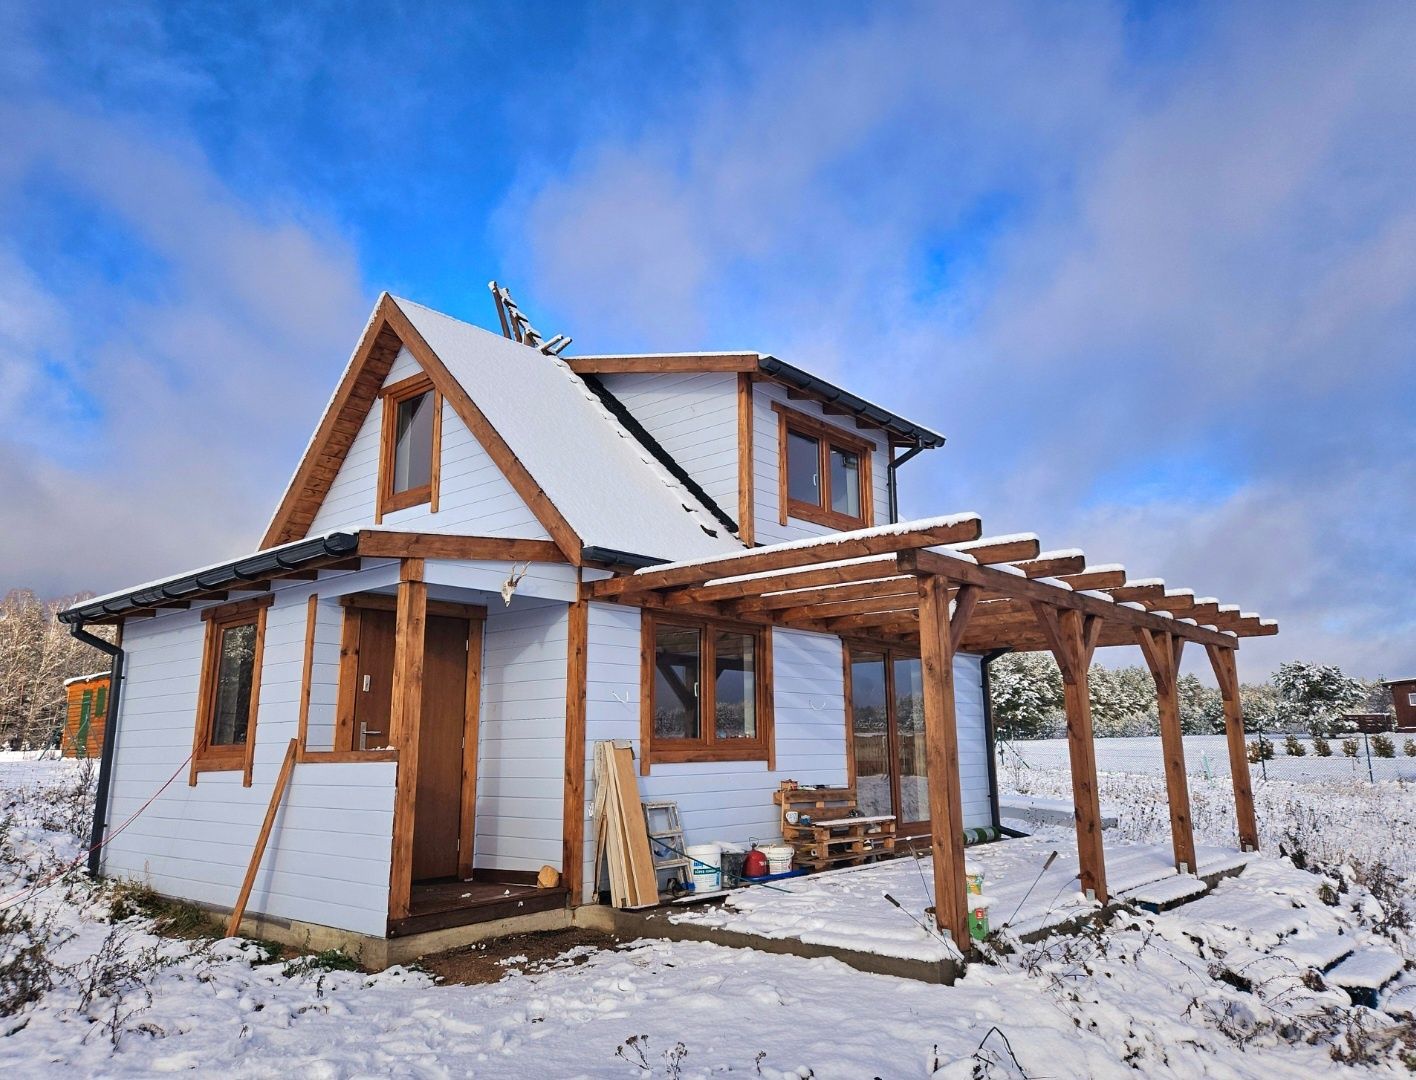 Dom drewniany 35 70 m konstrukcje drewniane wiata altana ogrod zimowy